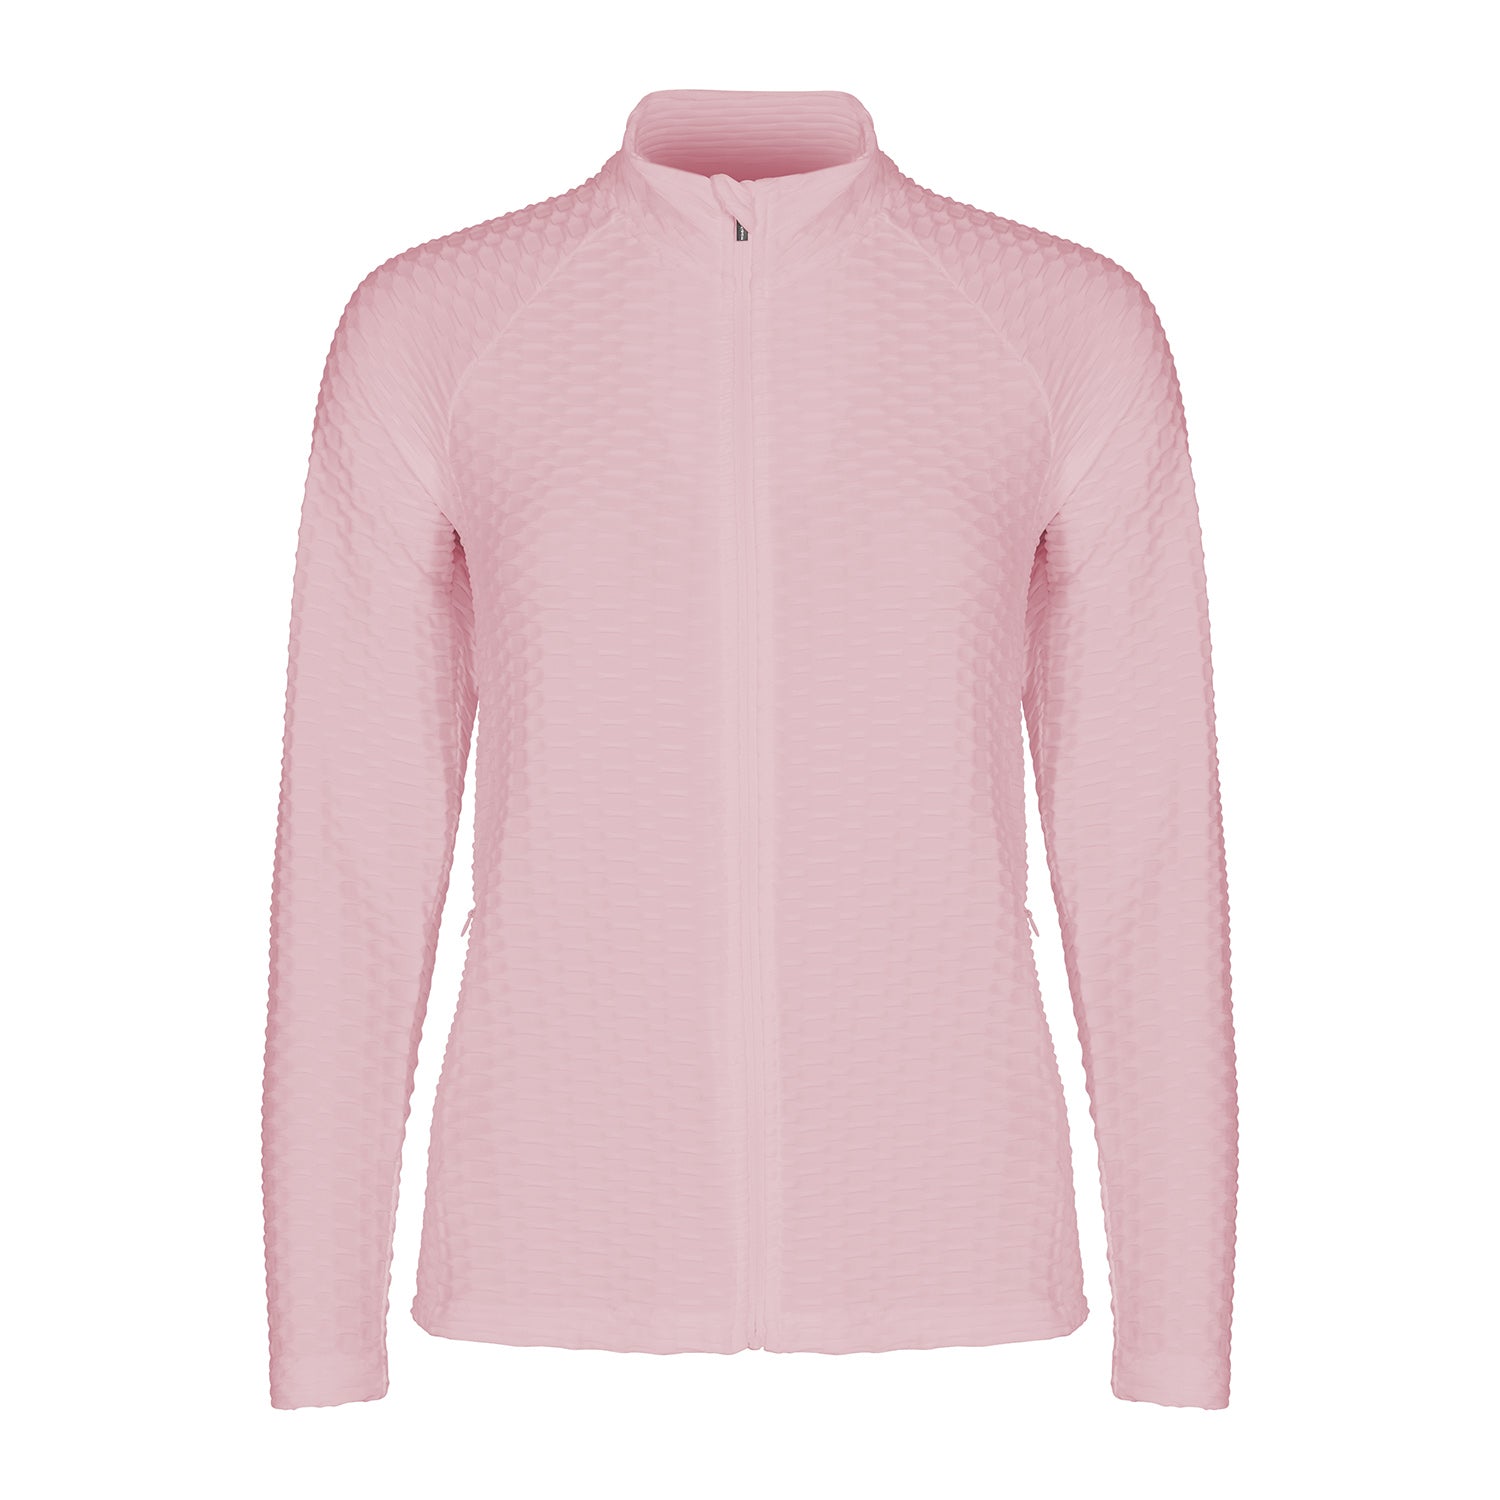 Rohnisch Ladies Textured Jersey Jacket in Orchid Pink